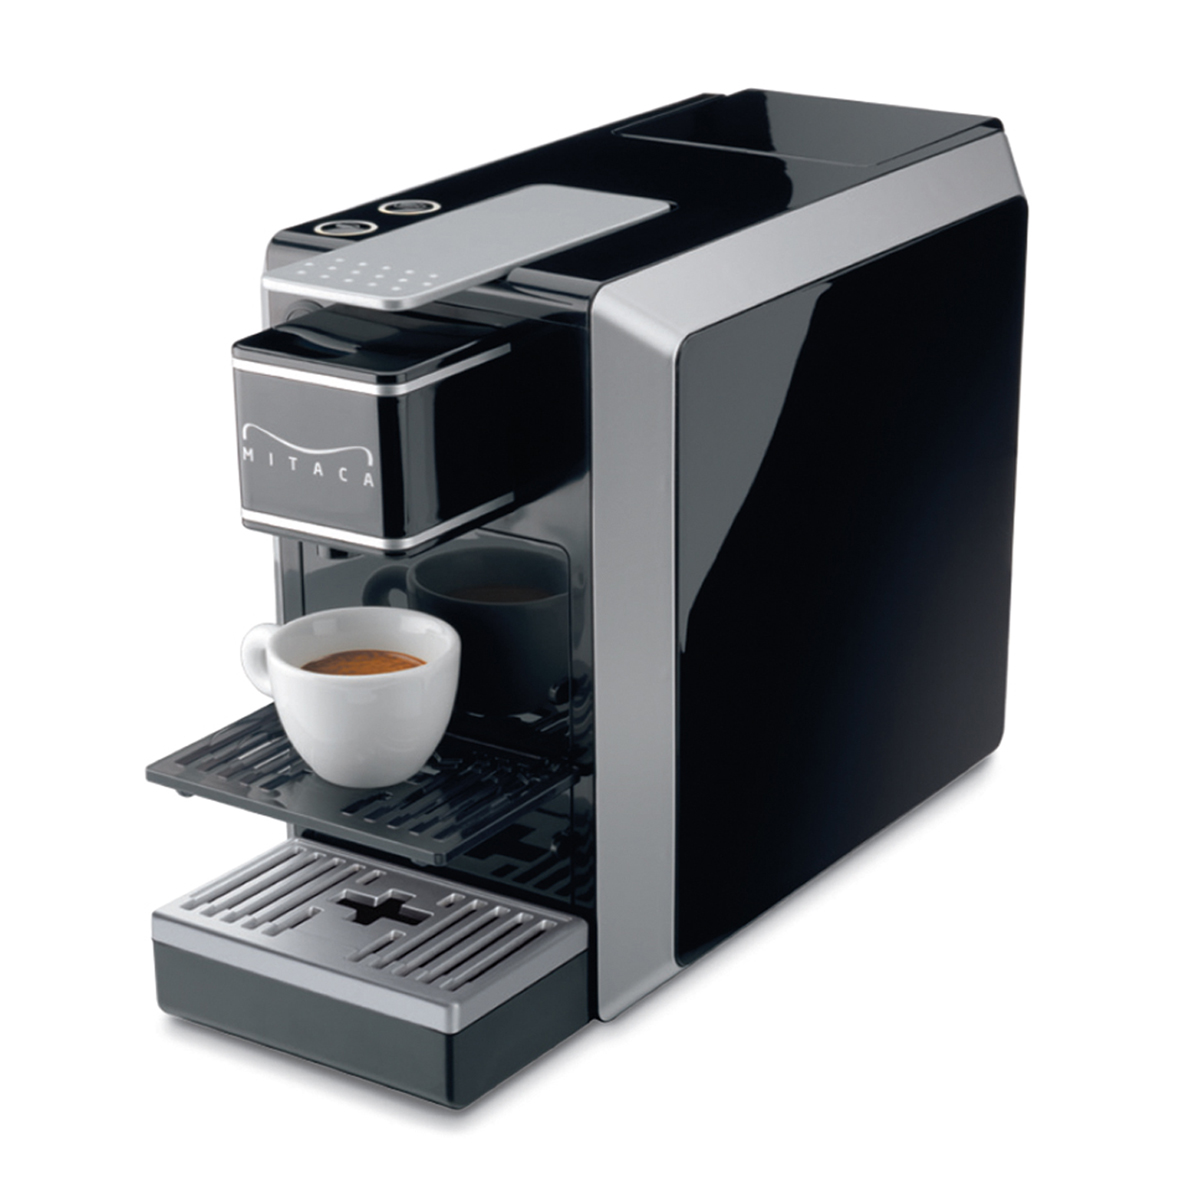 Machine à Café Illy Mitaca I9 (200 Doses)